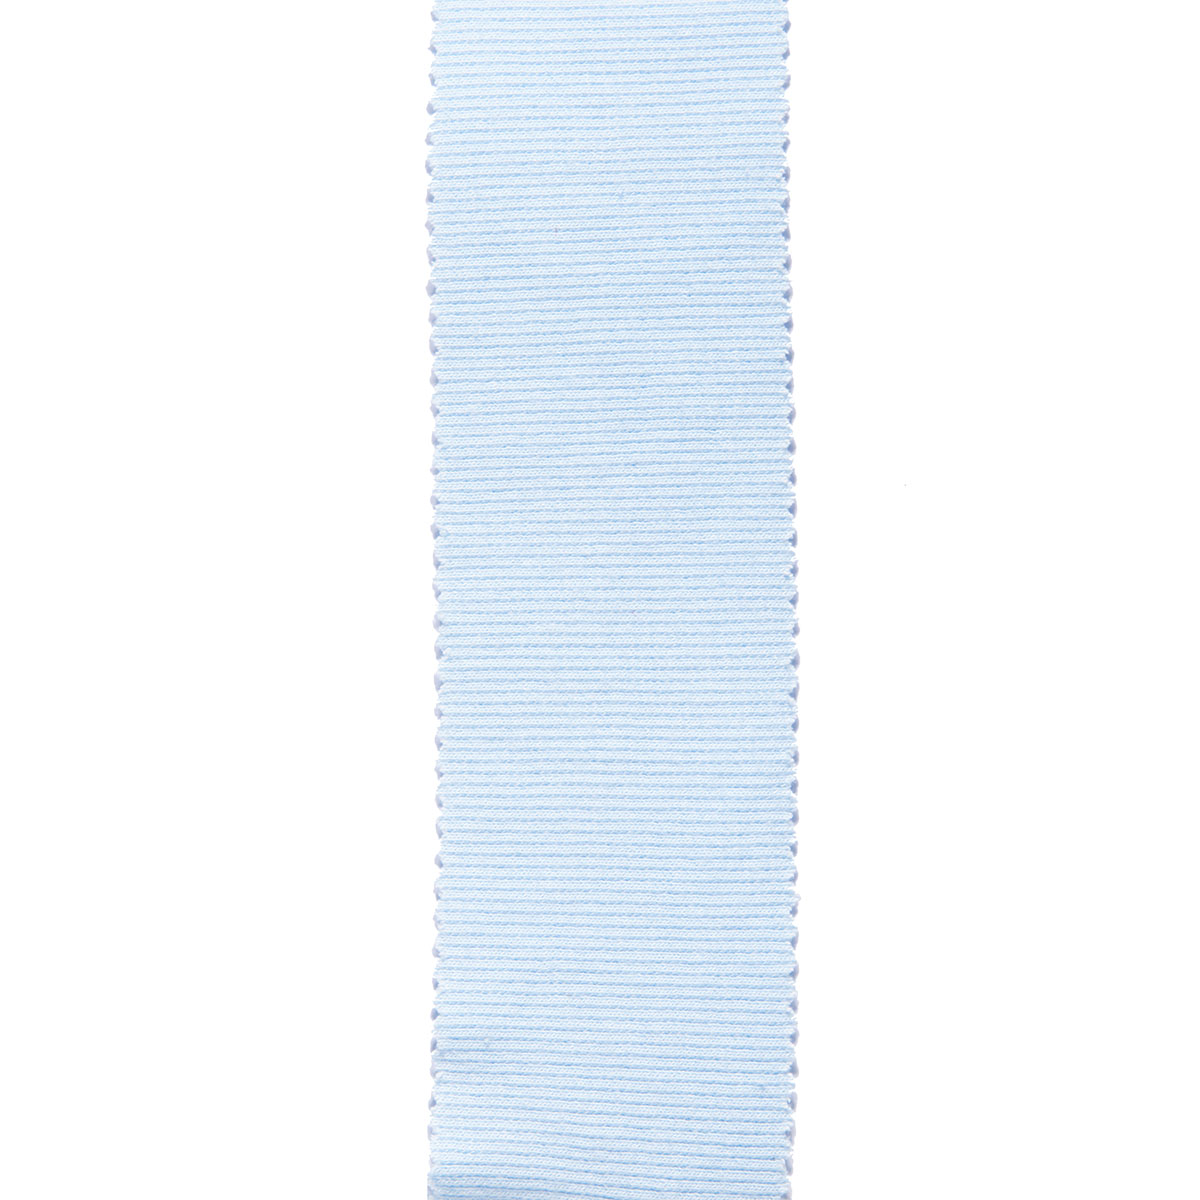 Dekostoff Gisele hellblau in 40cm Breite (METERWARE) Baumwollstoff Stoff aus 97% Baumwolle